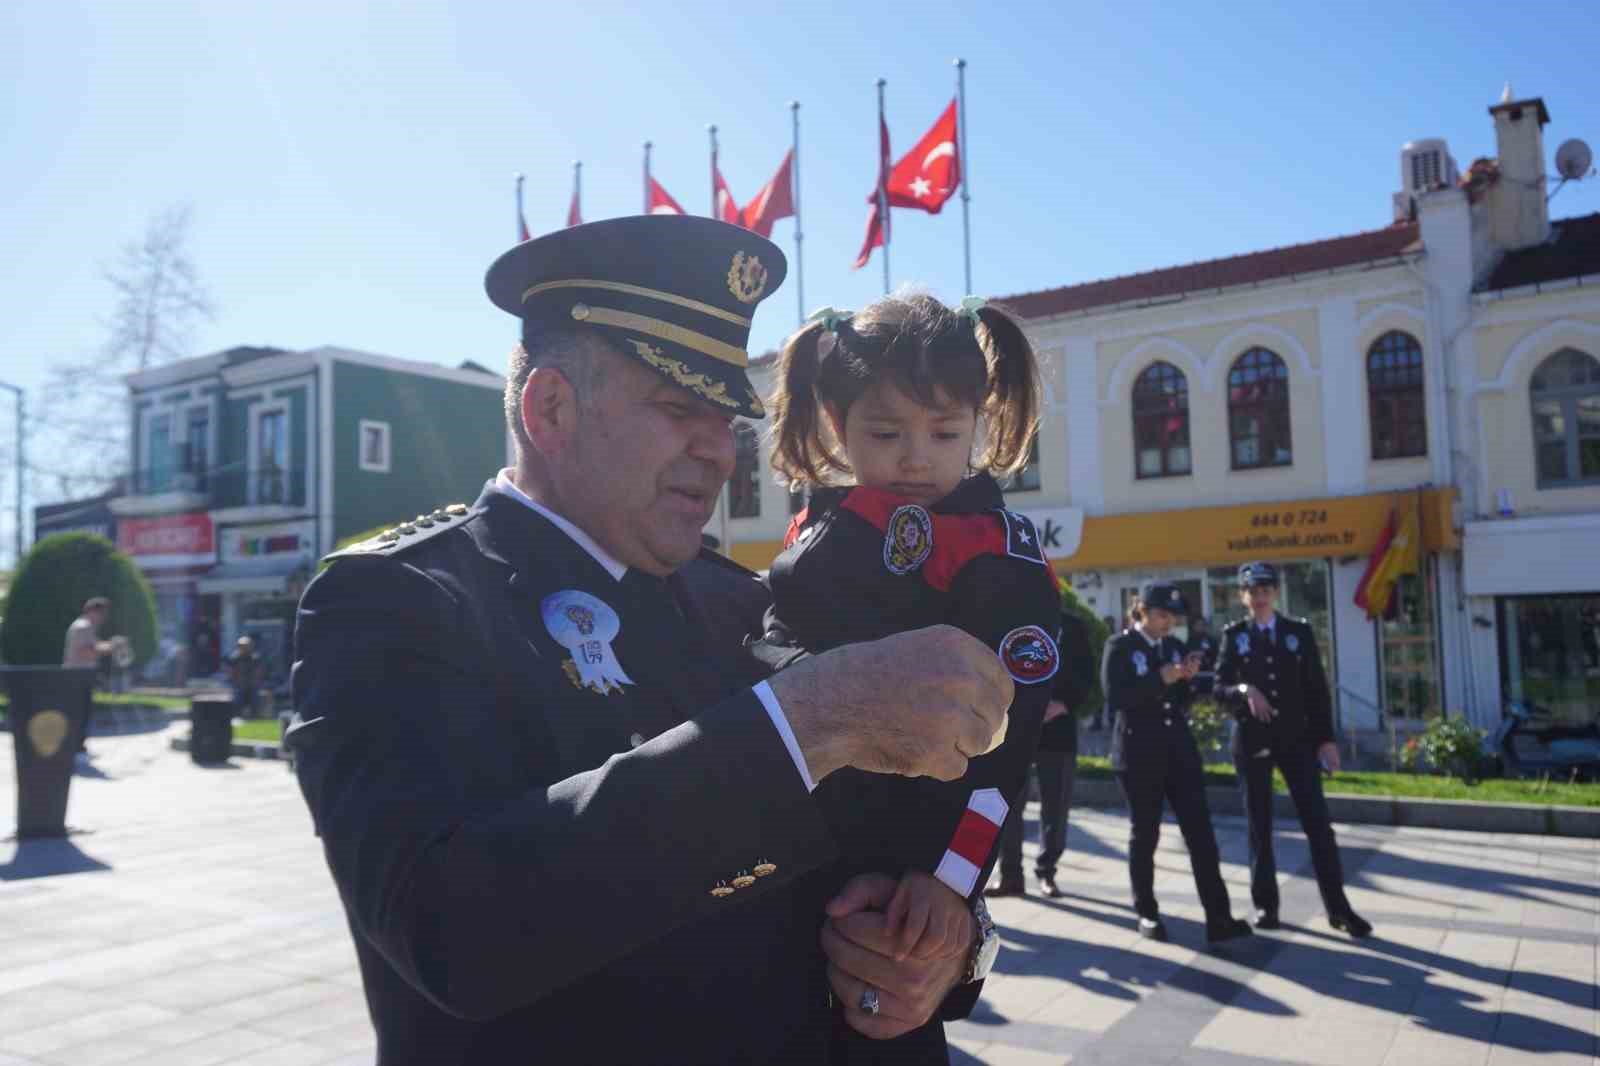 179 yıllık gurur: Türk Polis Teşkilatının 179. yılı törenle kutlandı
